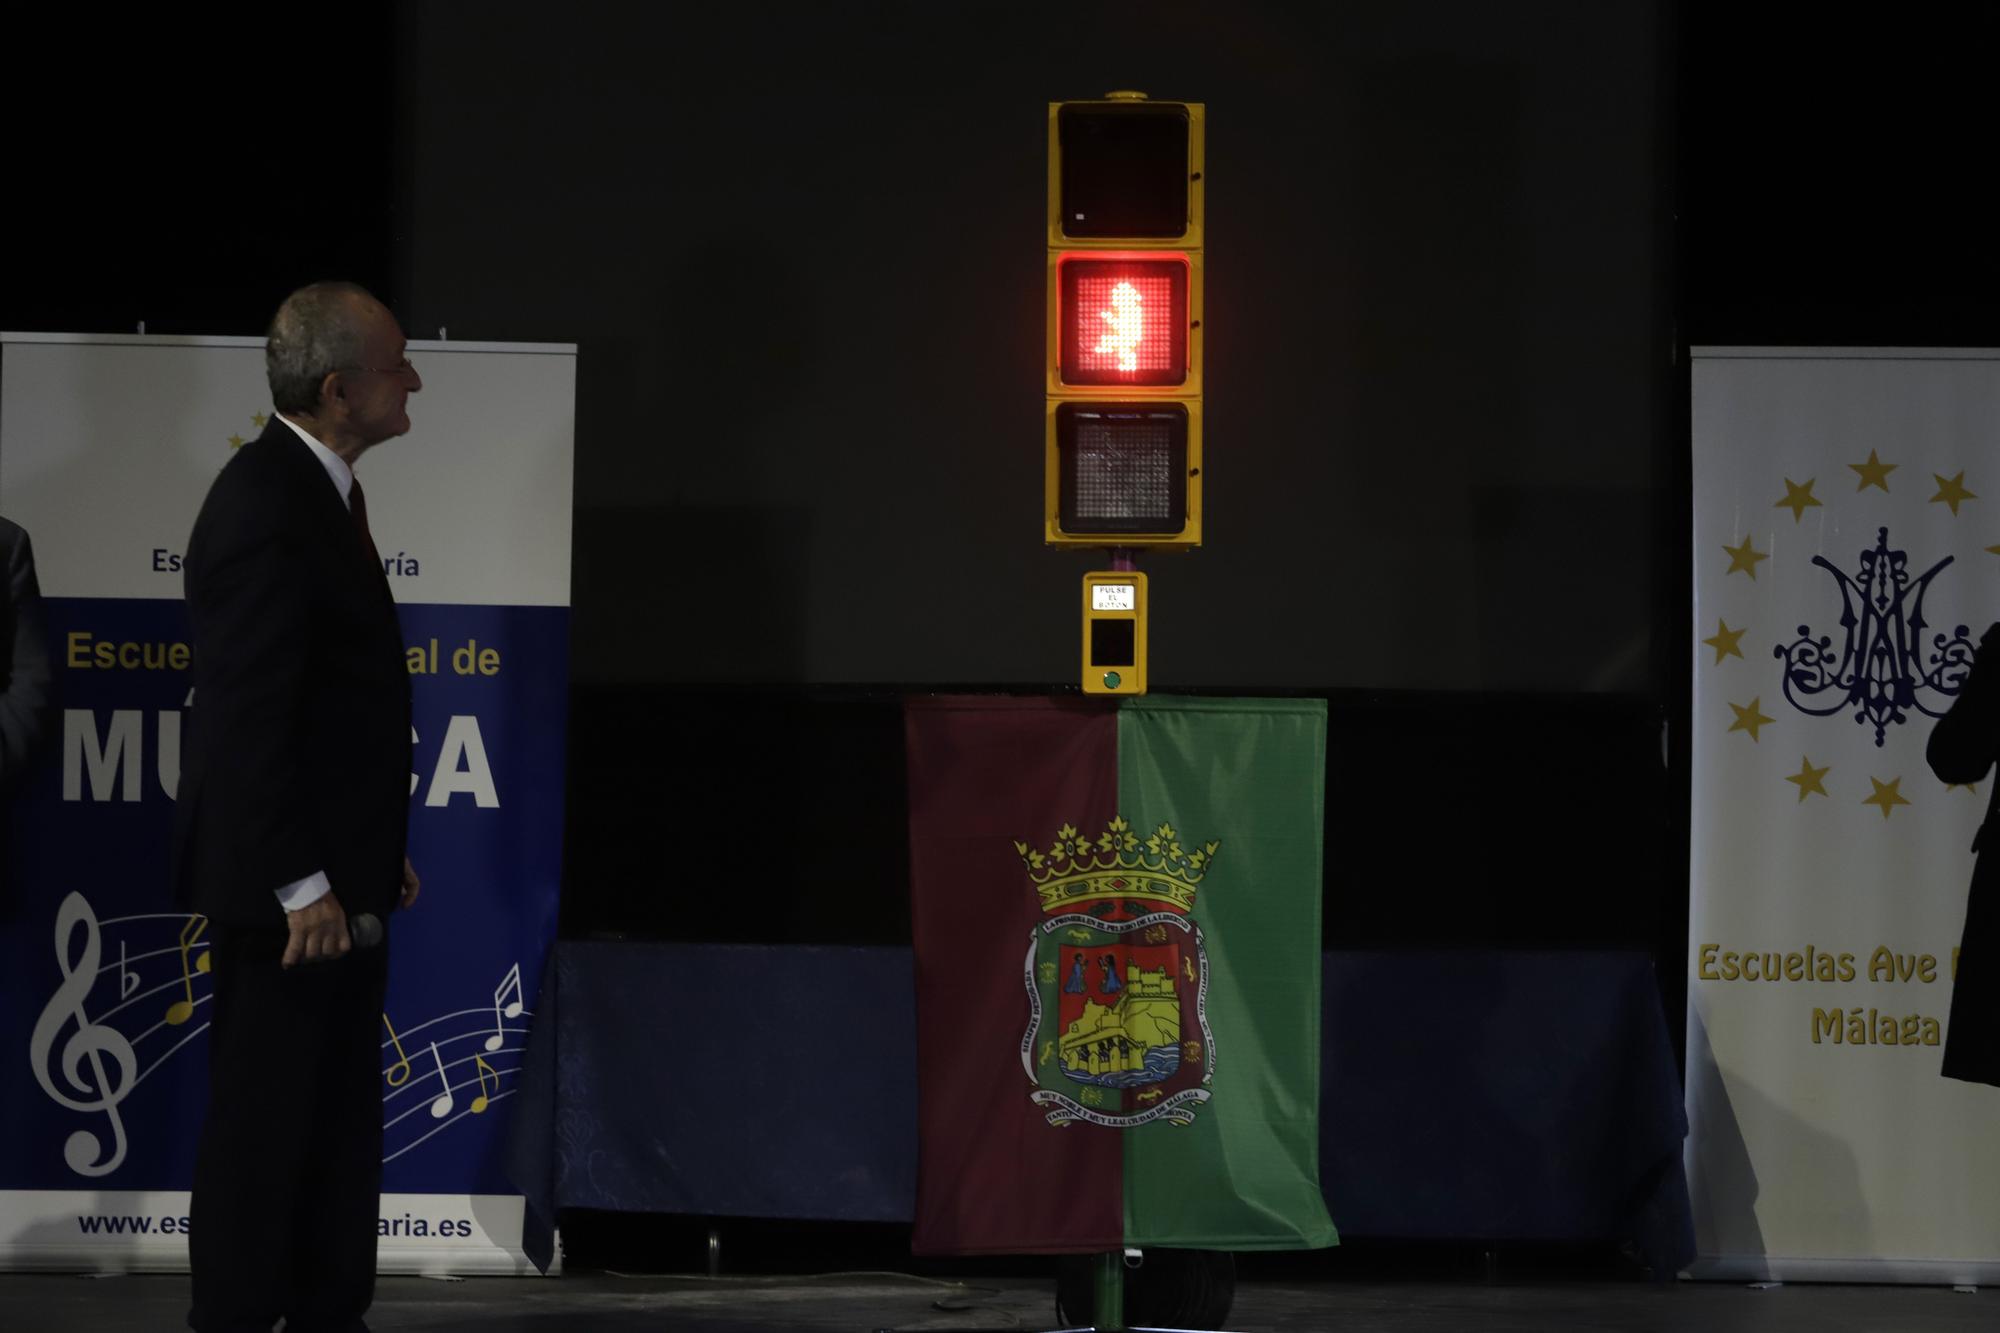 Nuevo semáforo de Chiquito de la Calzada en Málaga